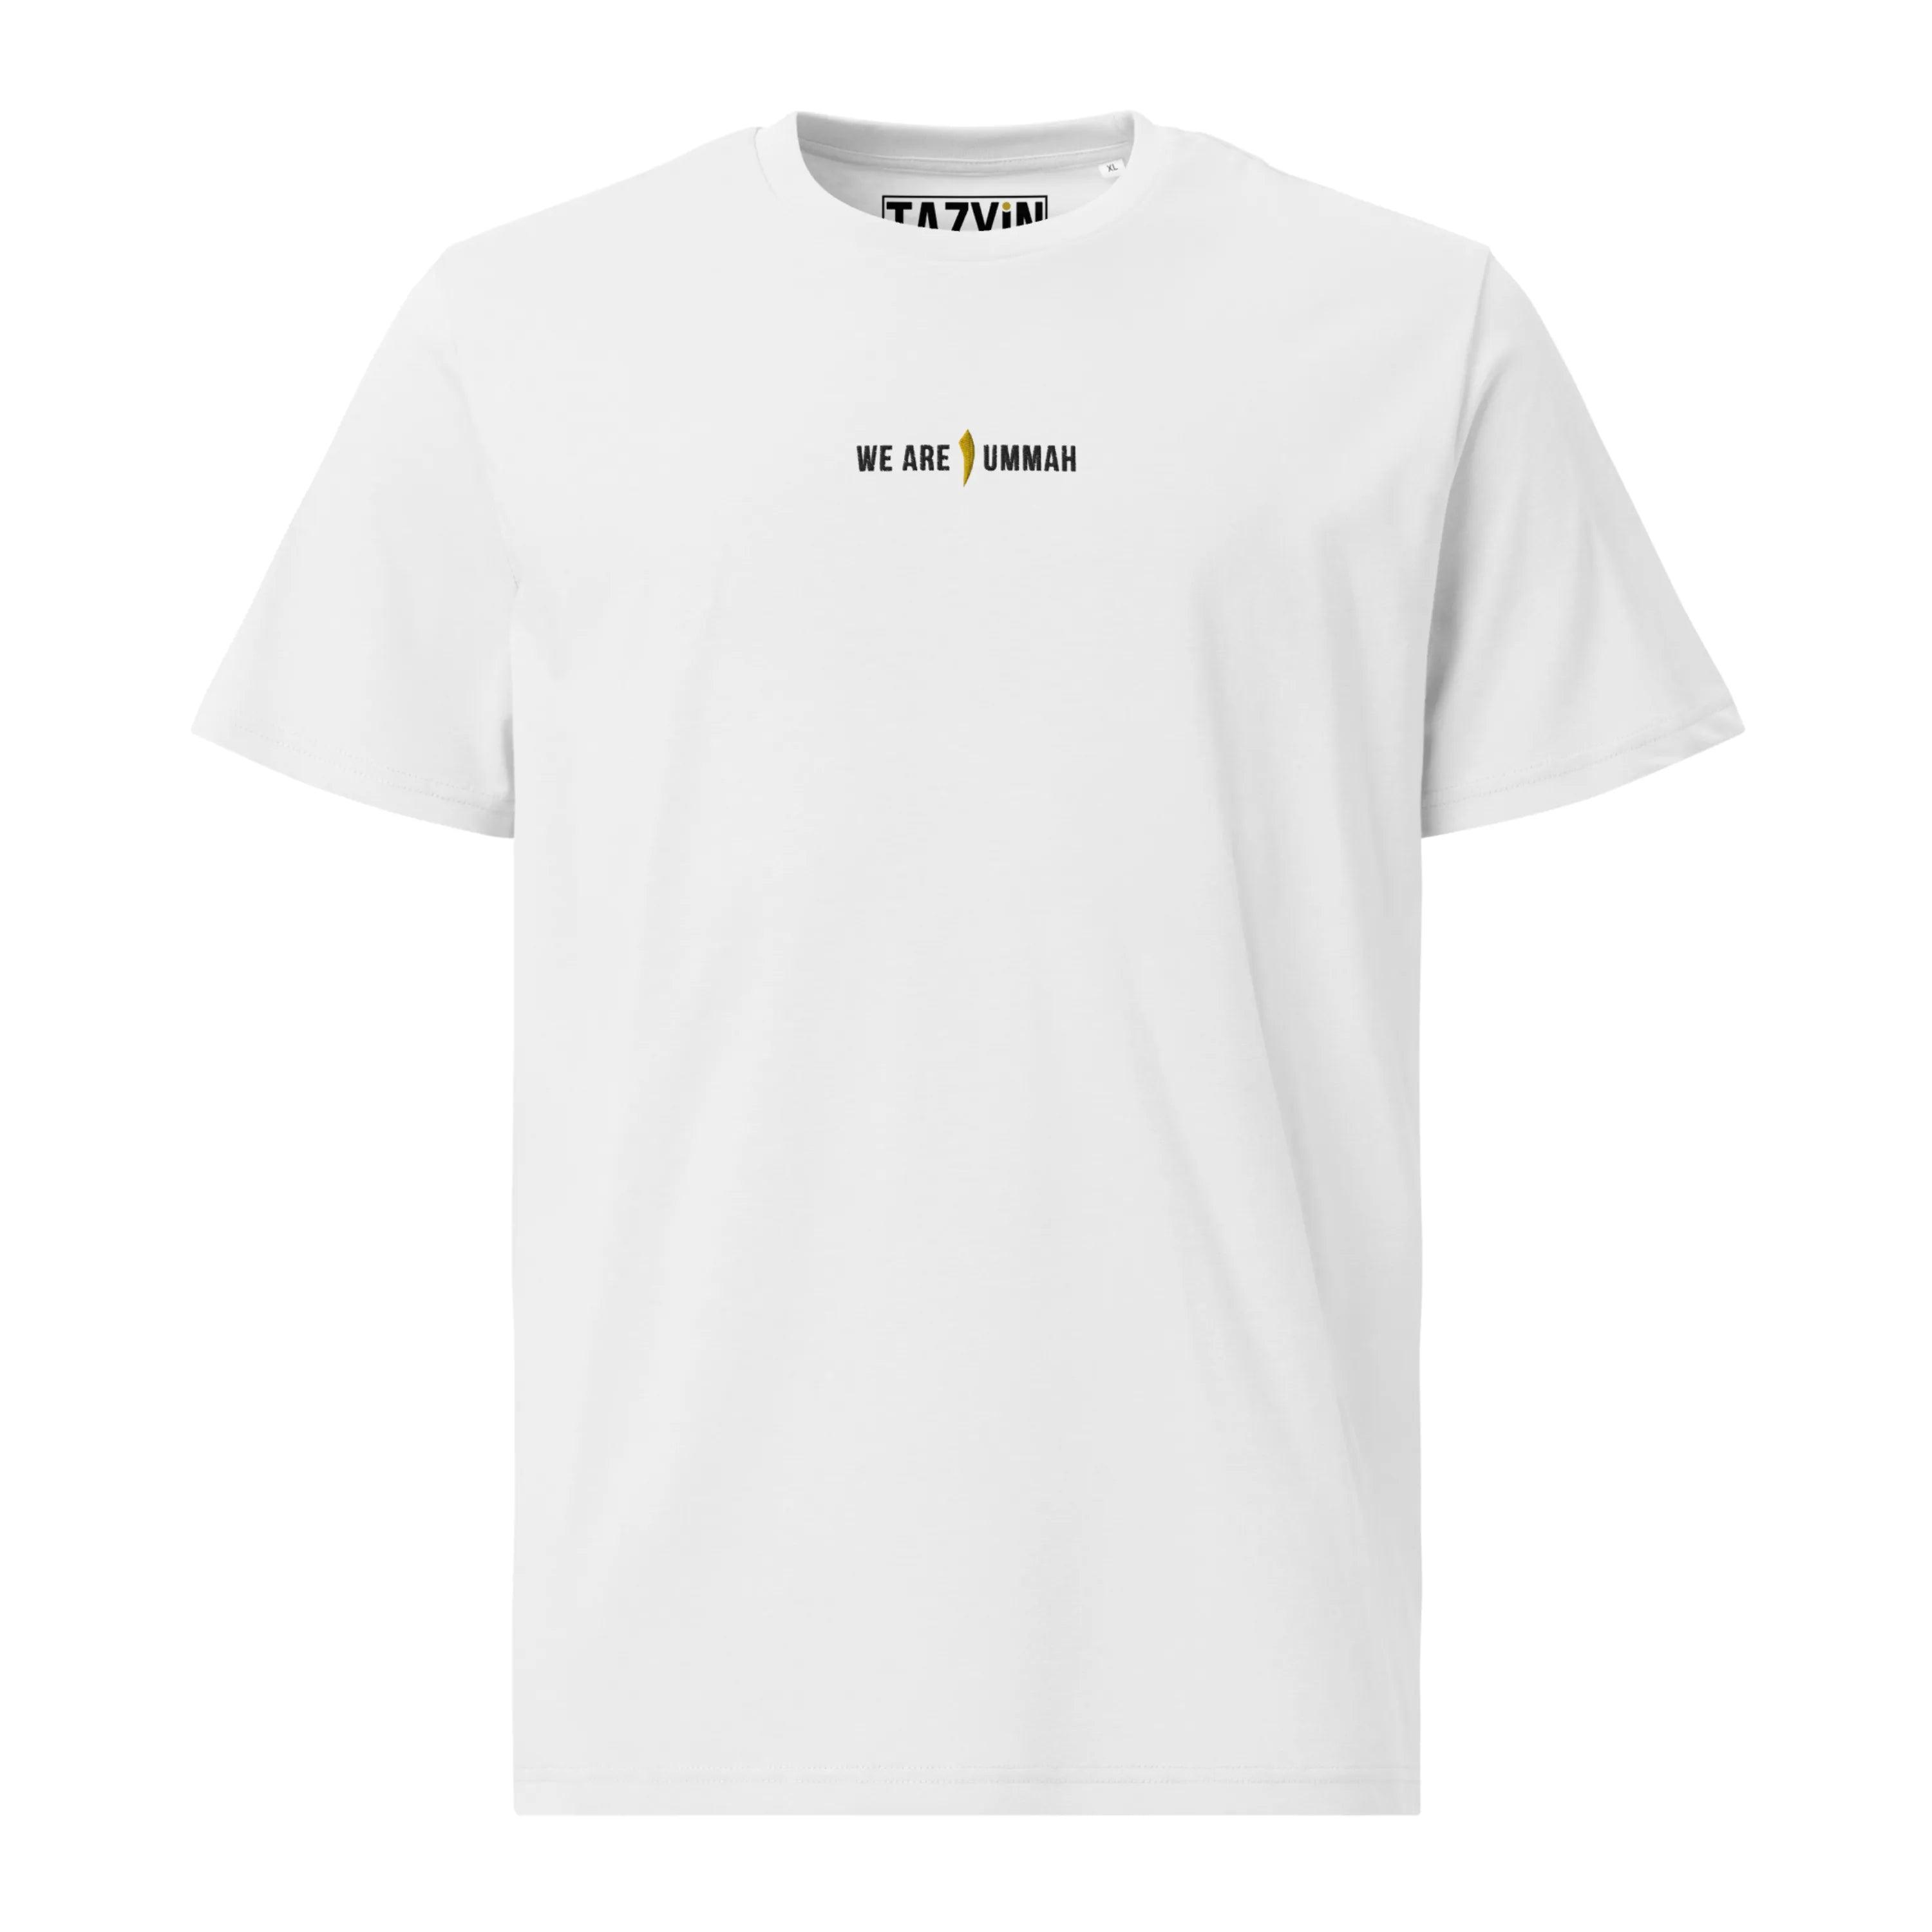 TAZYIN™ Unisex-T-Shirt - "We Are ١ Ummah" - Tazyin